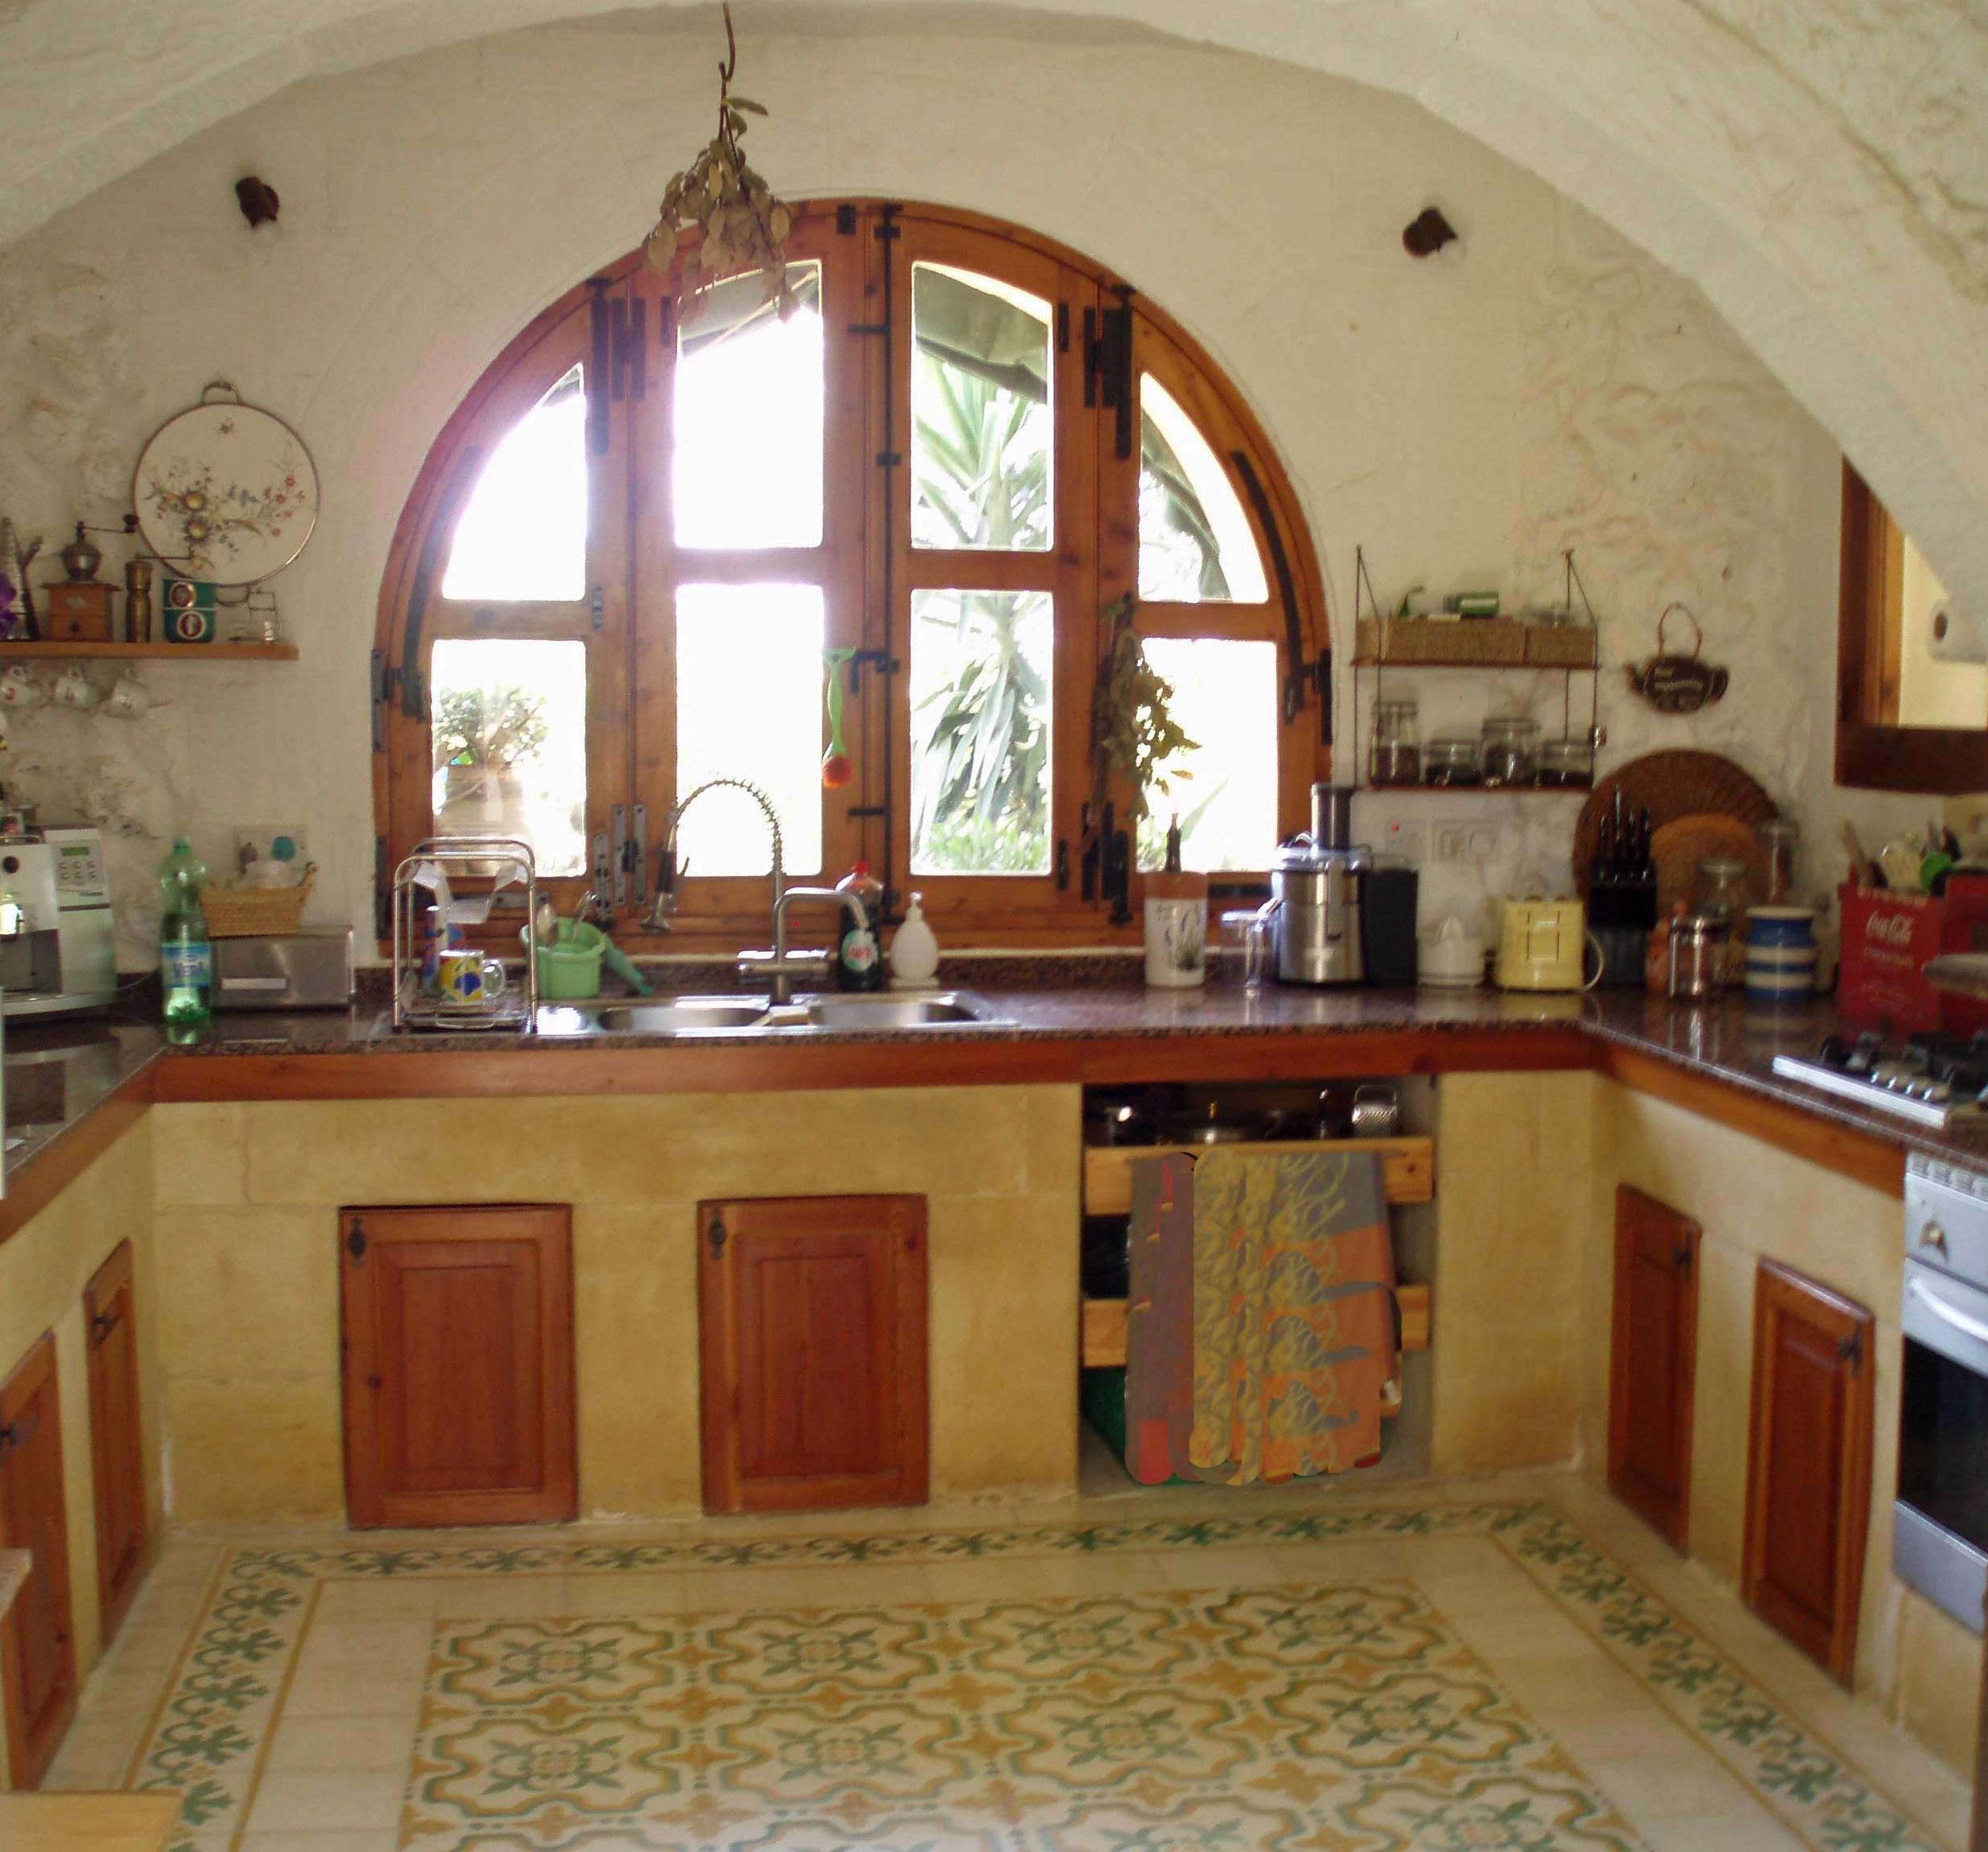 Farmhausküche #küche #landhausstil #zementfliesen ©Sabine von Possibilities